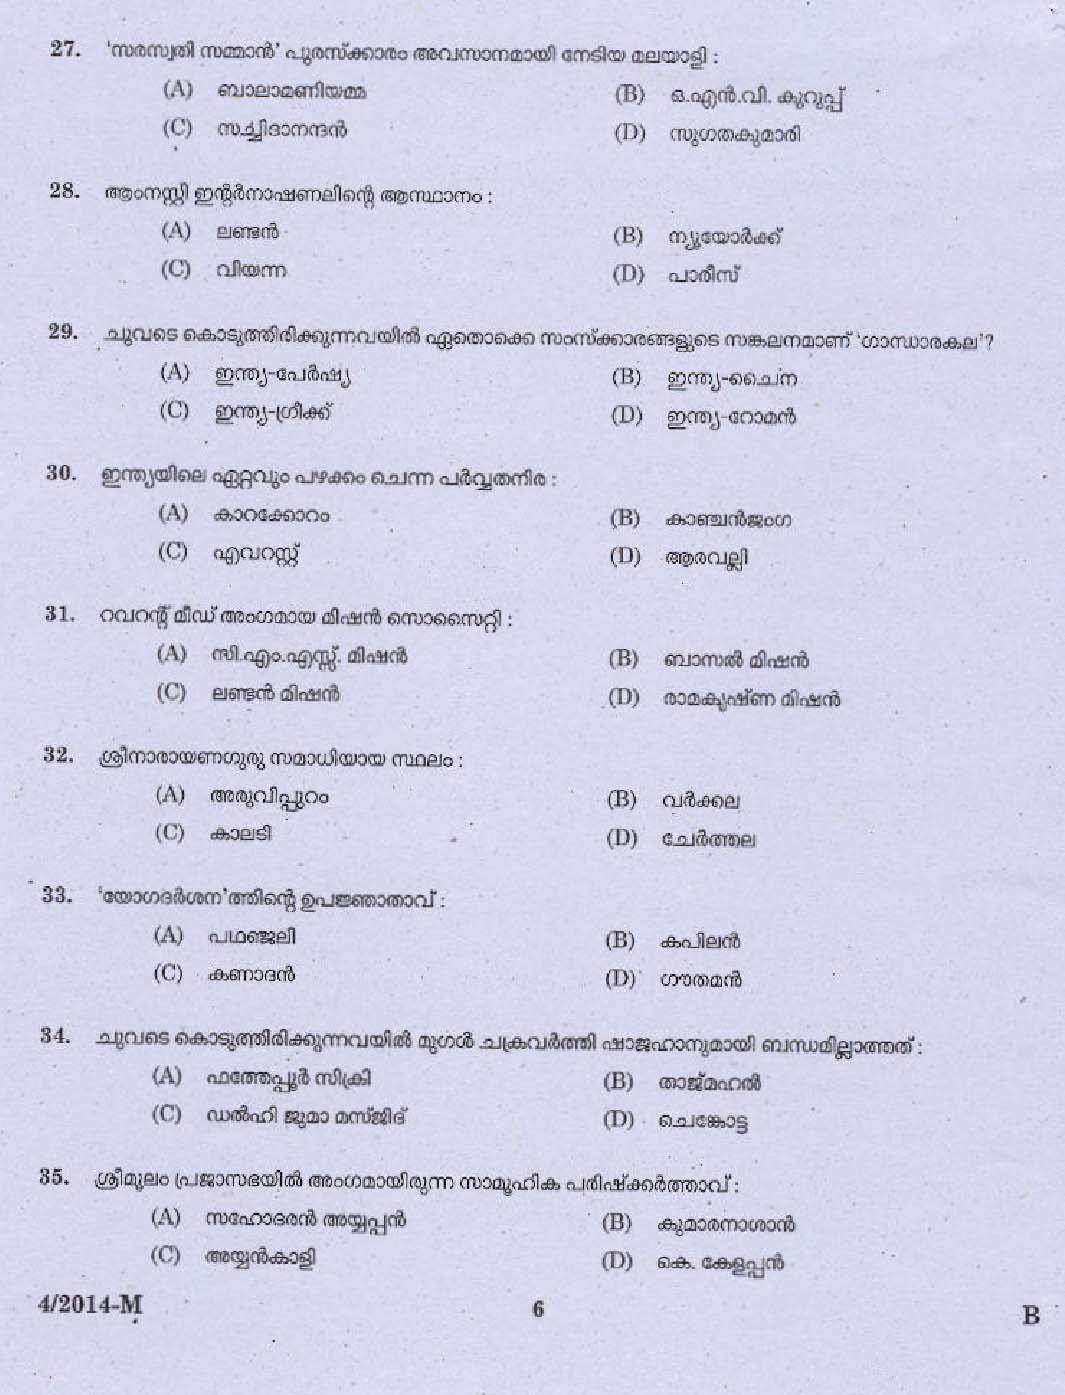 Kerala PSC Driver Grade II Exam 2014 Question Paper Code 042014 M 4